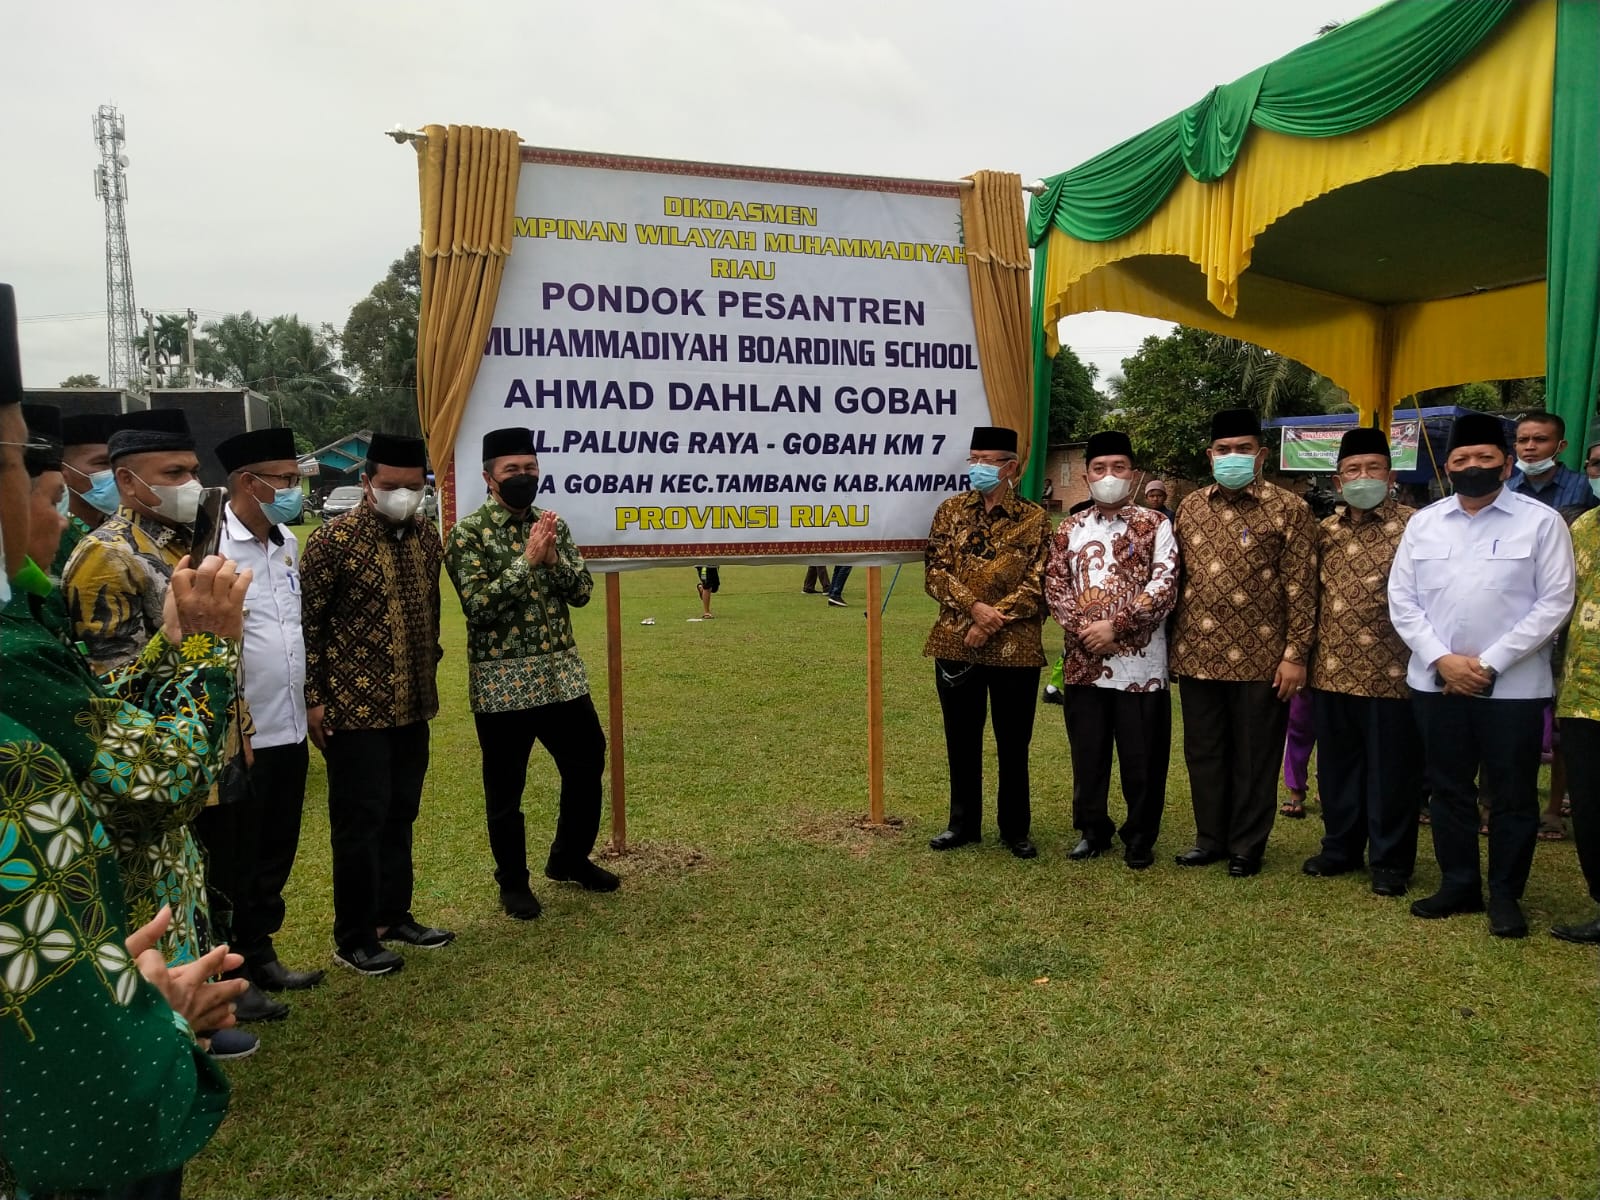 Hadiri Milad Muhammadiyah ke-109, Gubernur Riau Resmikan Pondok Pesantren MBS Ahmad Dahlan